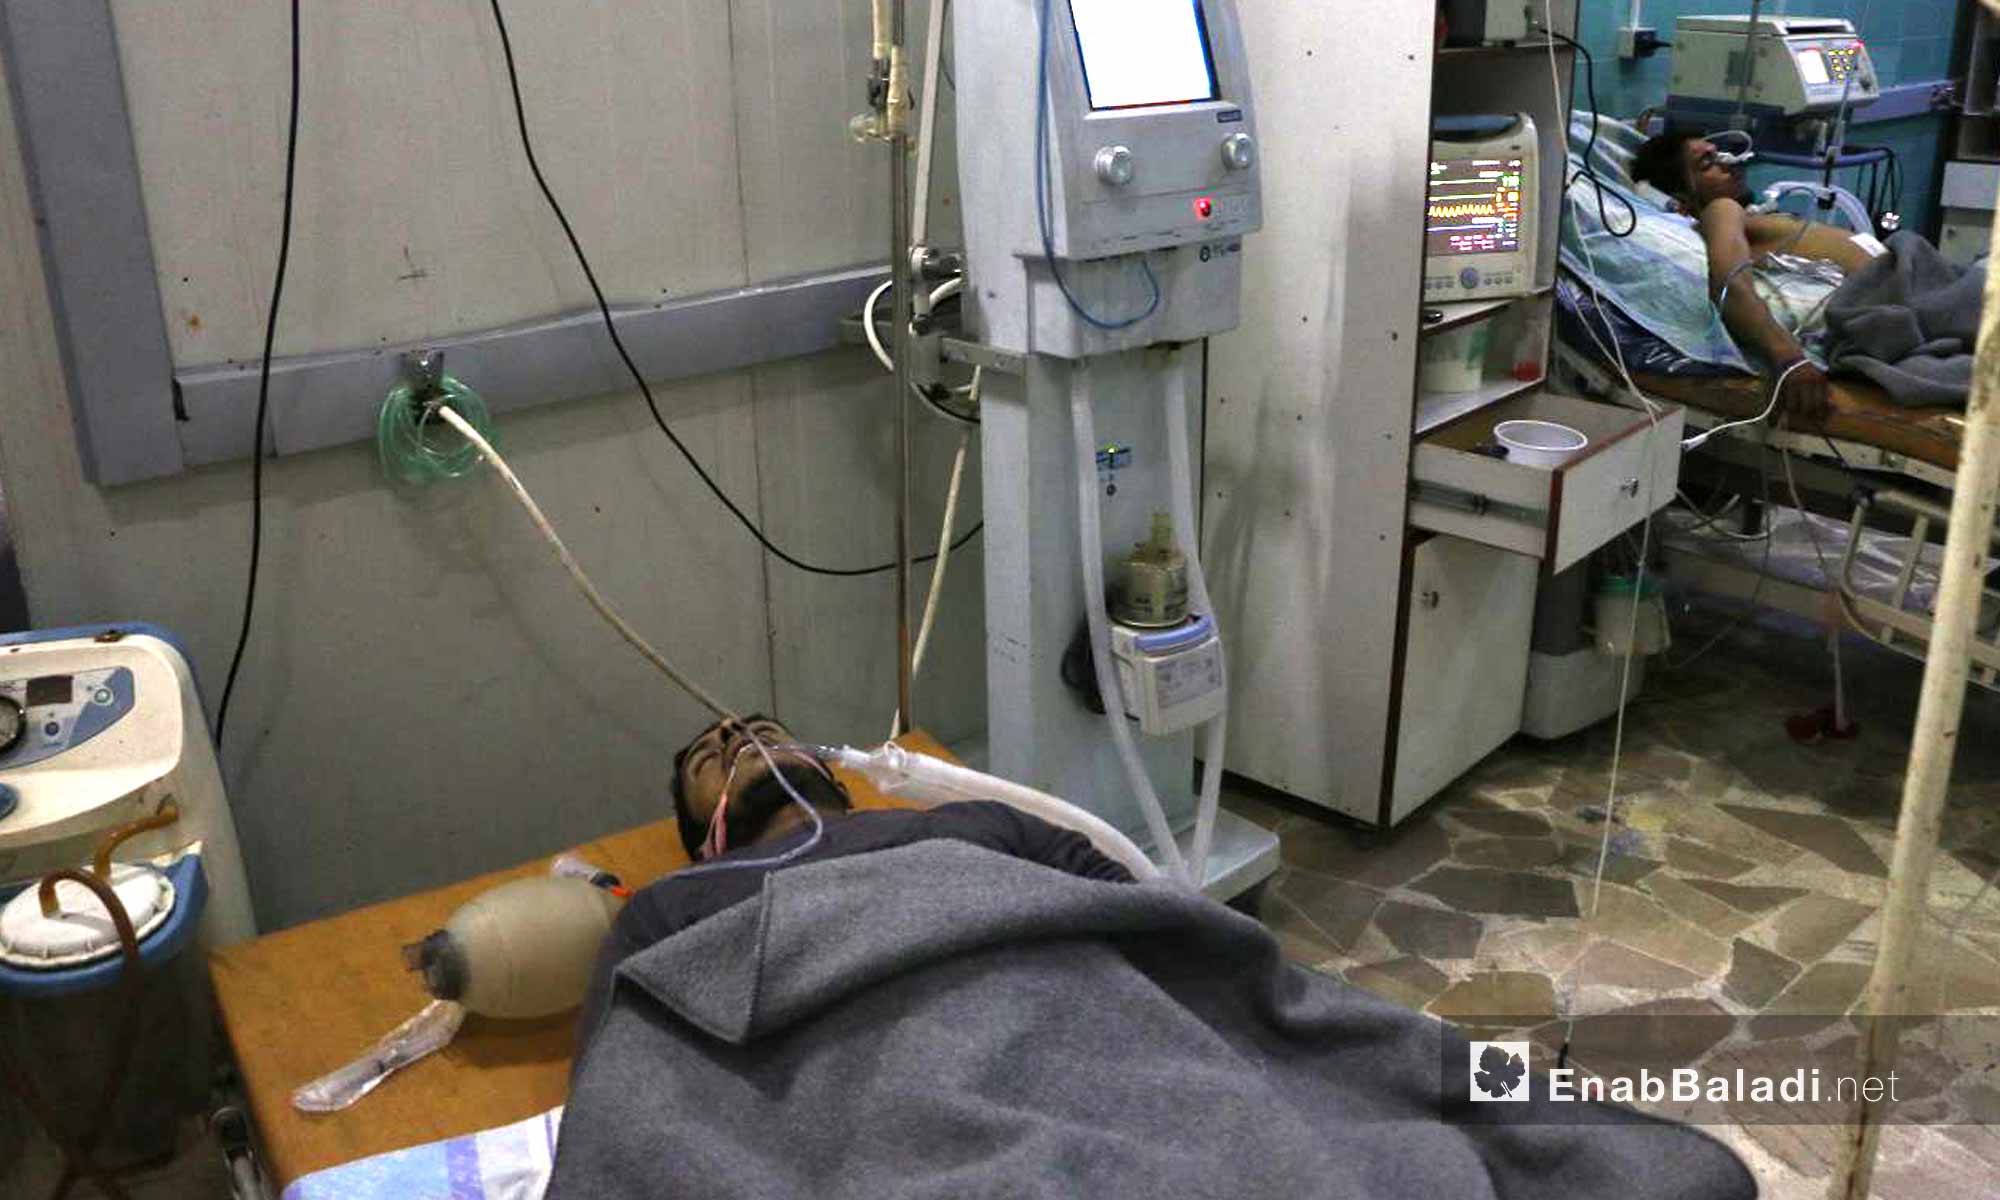 شابان أصيبا بالتسمم في زملكا بالغوطة الشرقية - 23 تشرين الثاني 2017 (عنب بلدي)